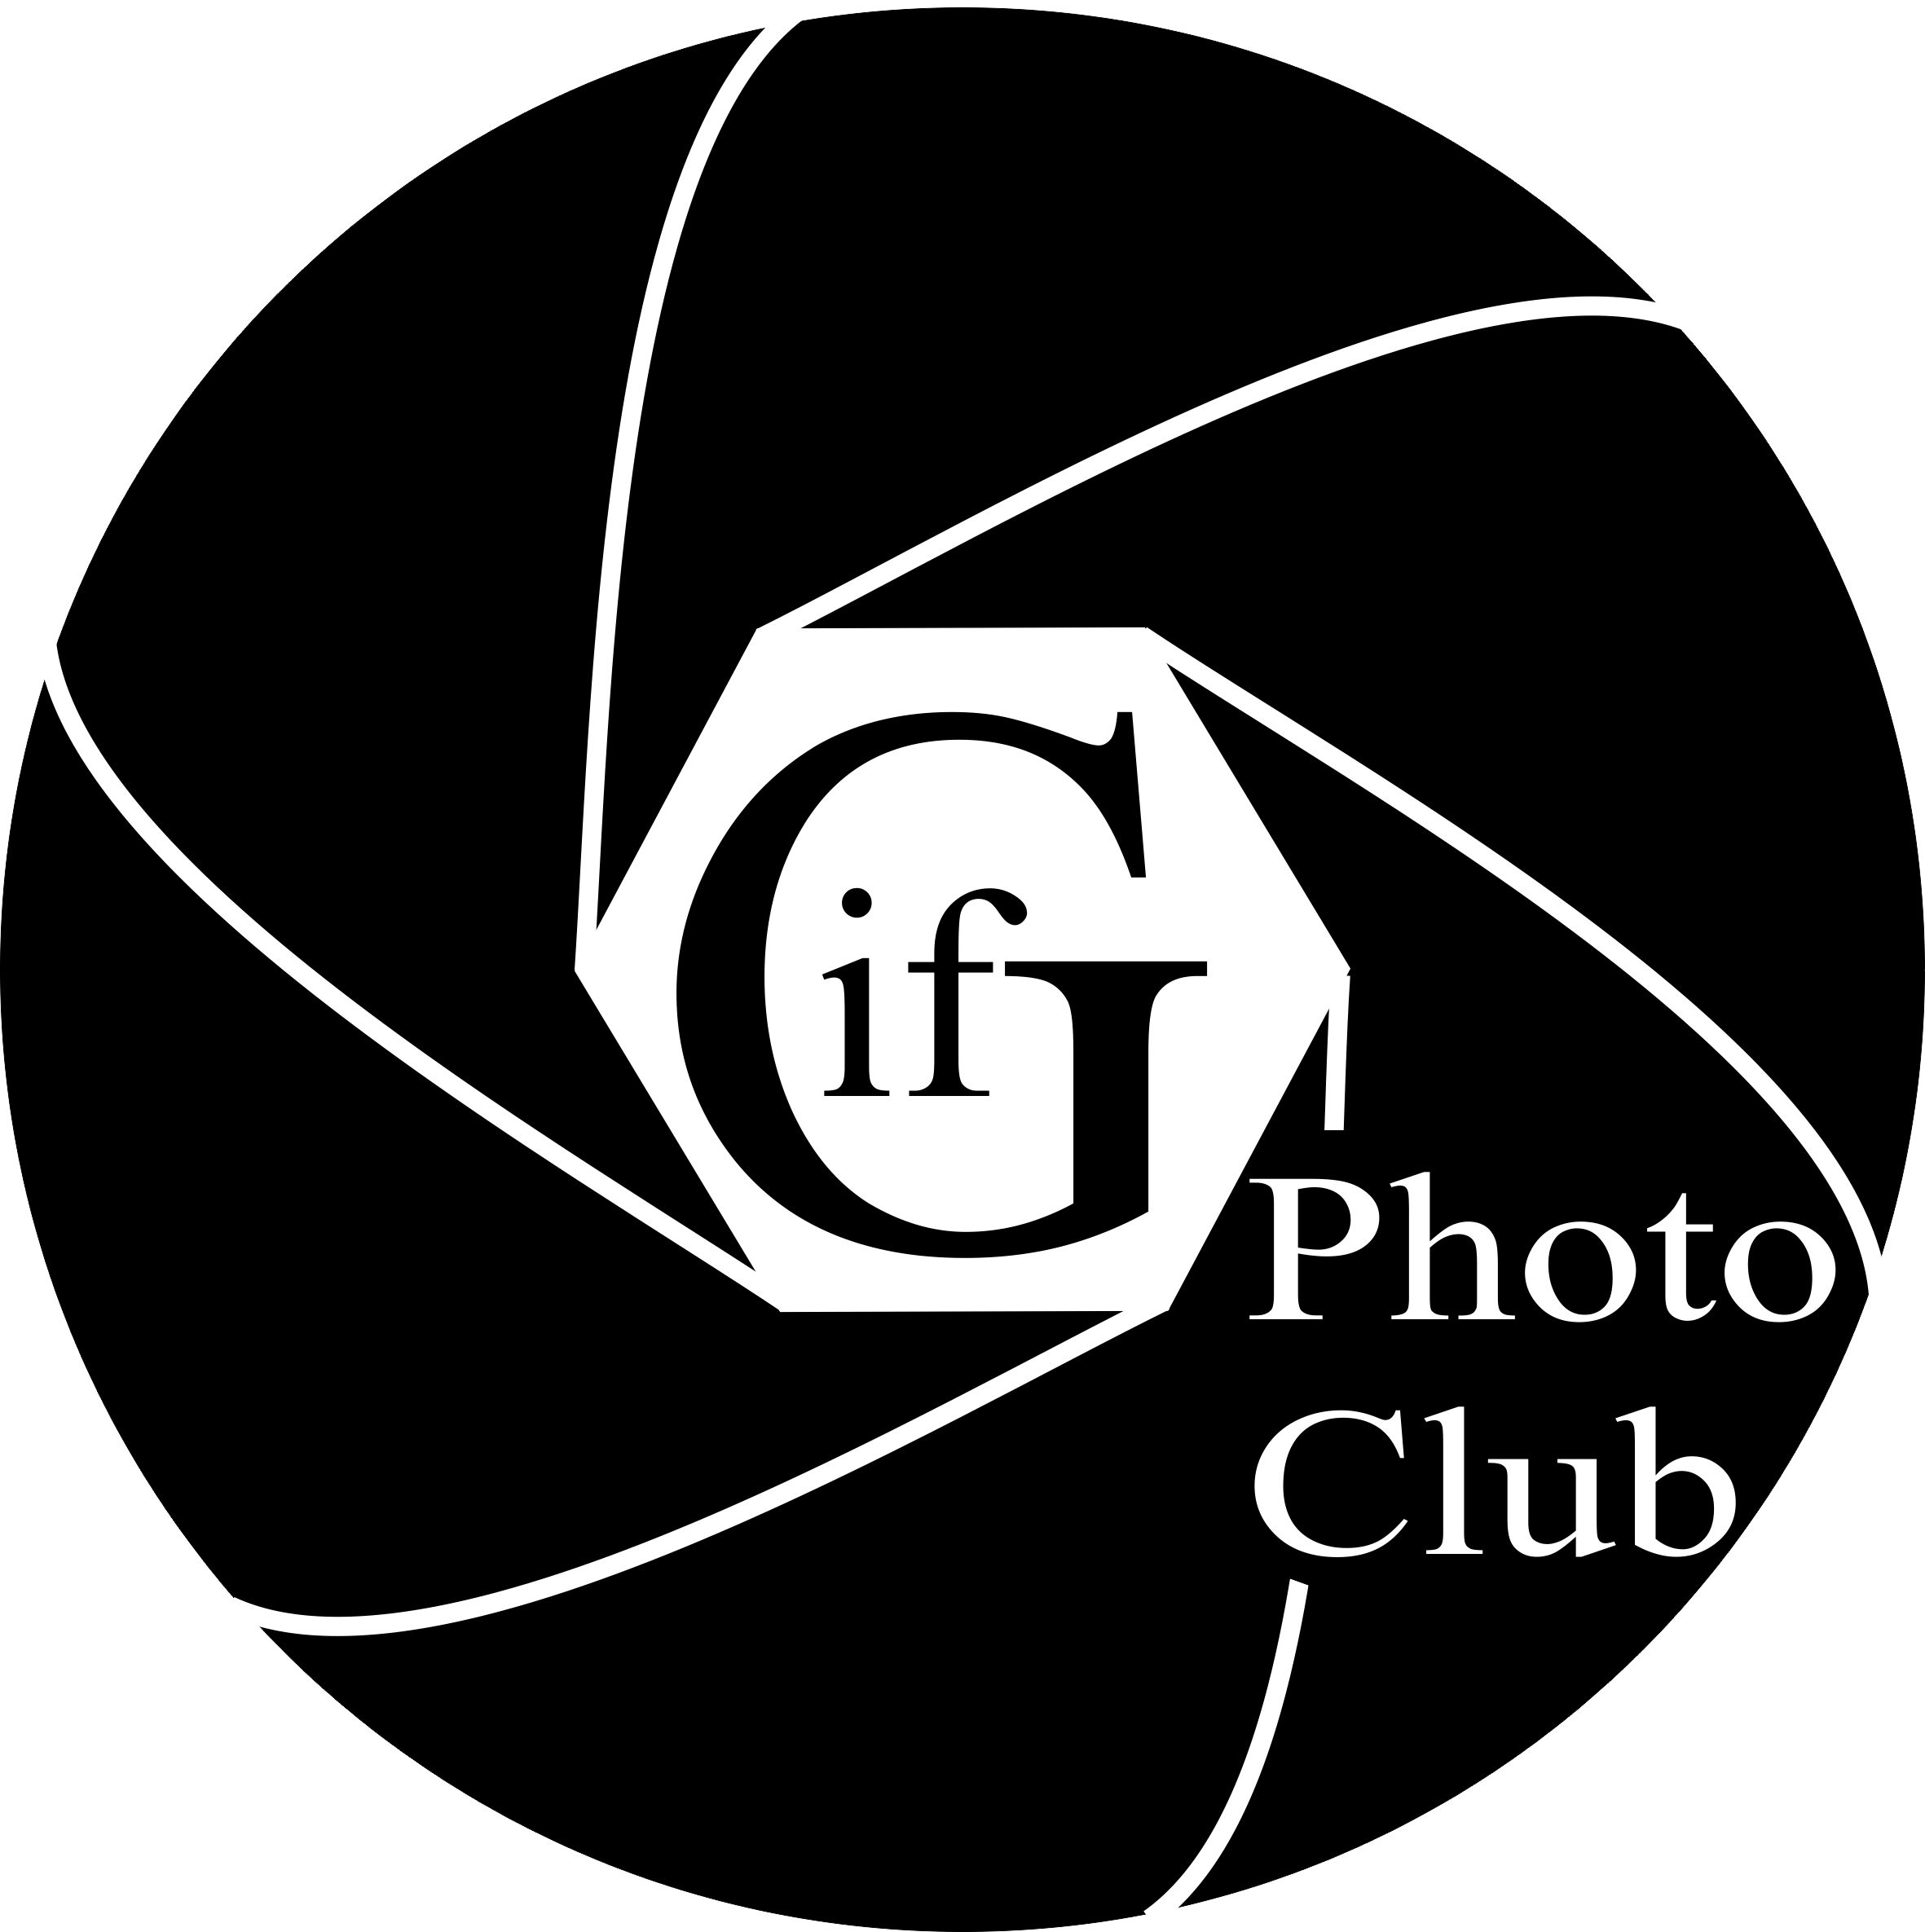 Gif Photo Club